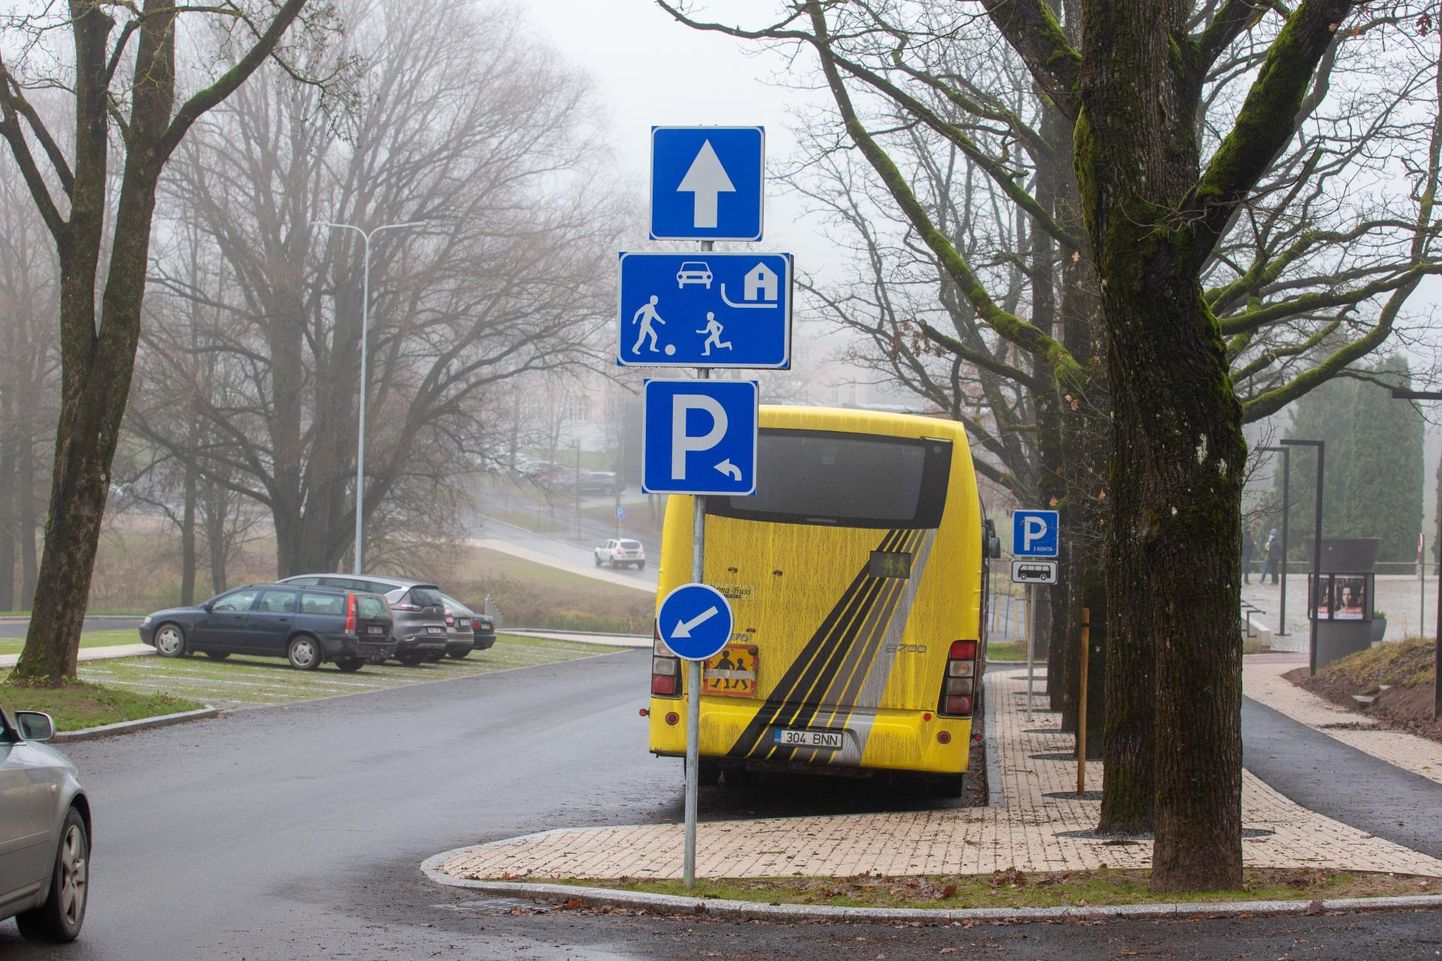 Vana-Vaksali tänav on liiklusmärgiga tähistatud kui õueala, kust ei tohi peatumata või parkimata läbi sõita. Suured bussid seal üldse parkida ei tohi.